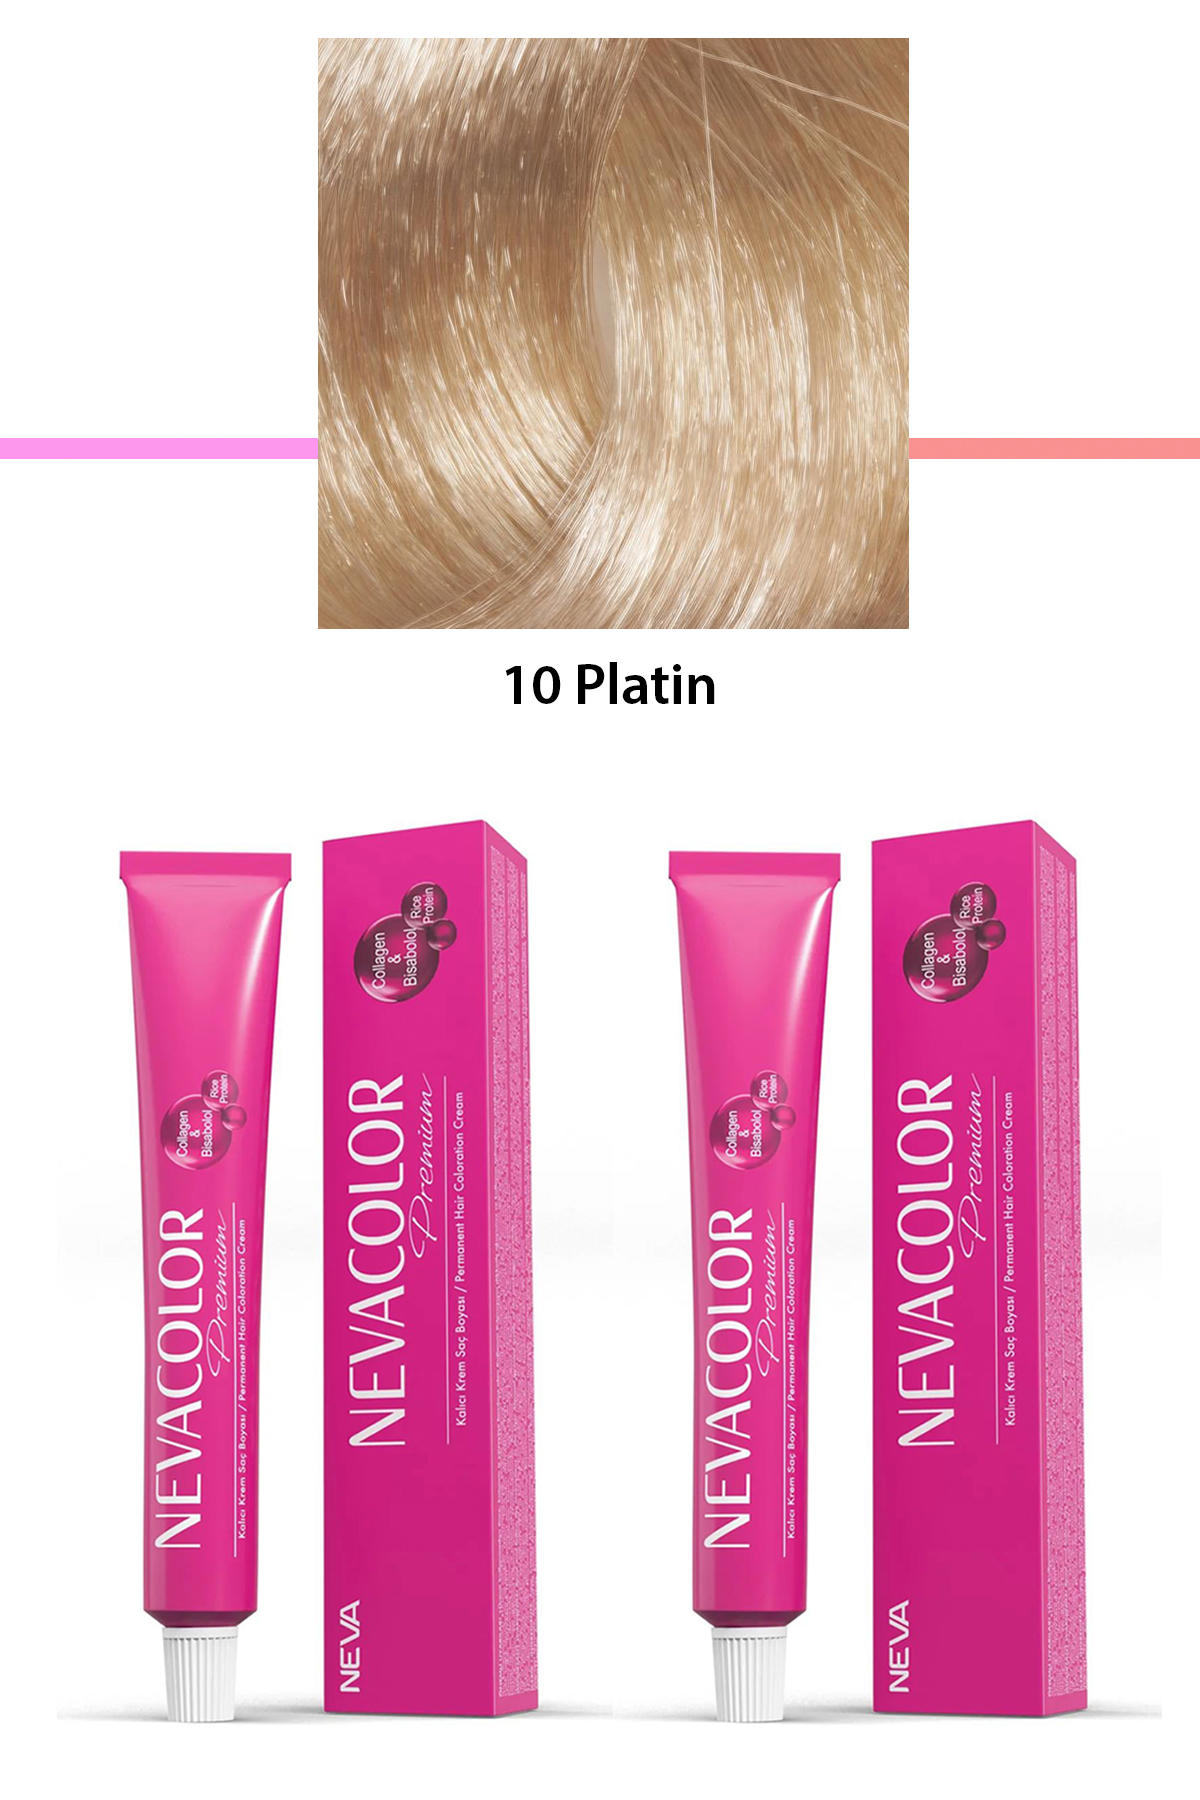 Nevacolor 10 Platin Organik Krem Saç Boyası 50 gr